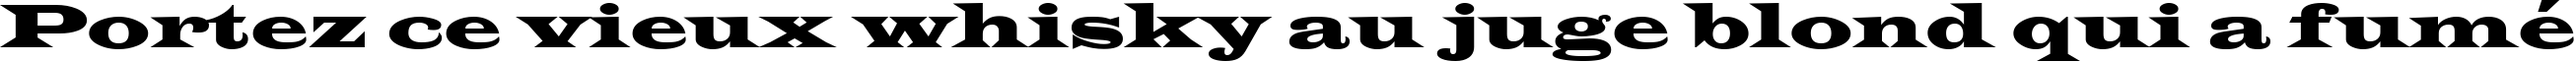 Пример написания шрифтом Evita Regular текста на французском